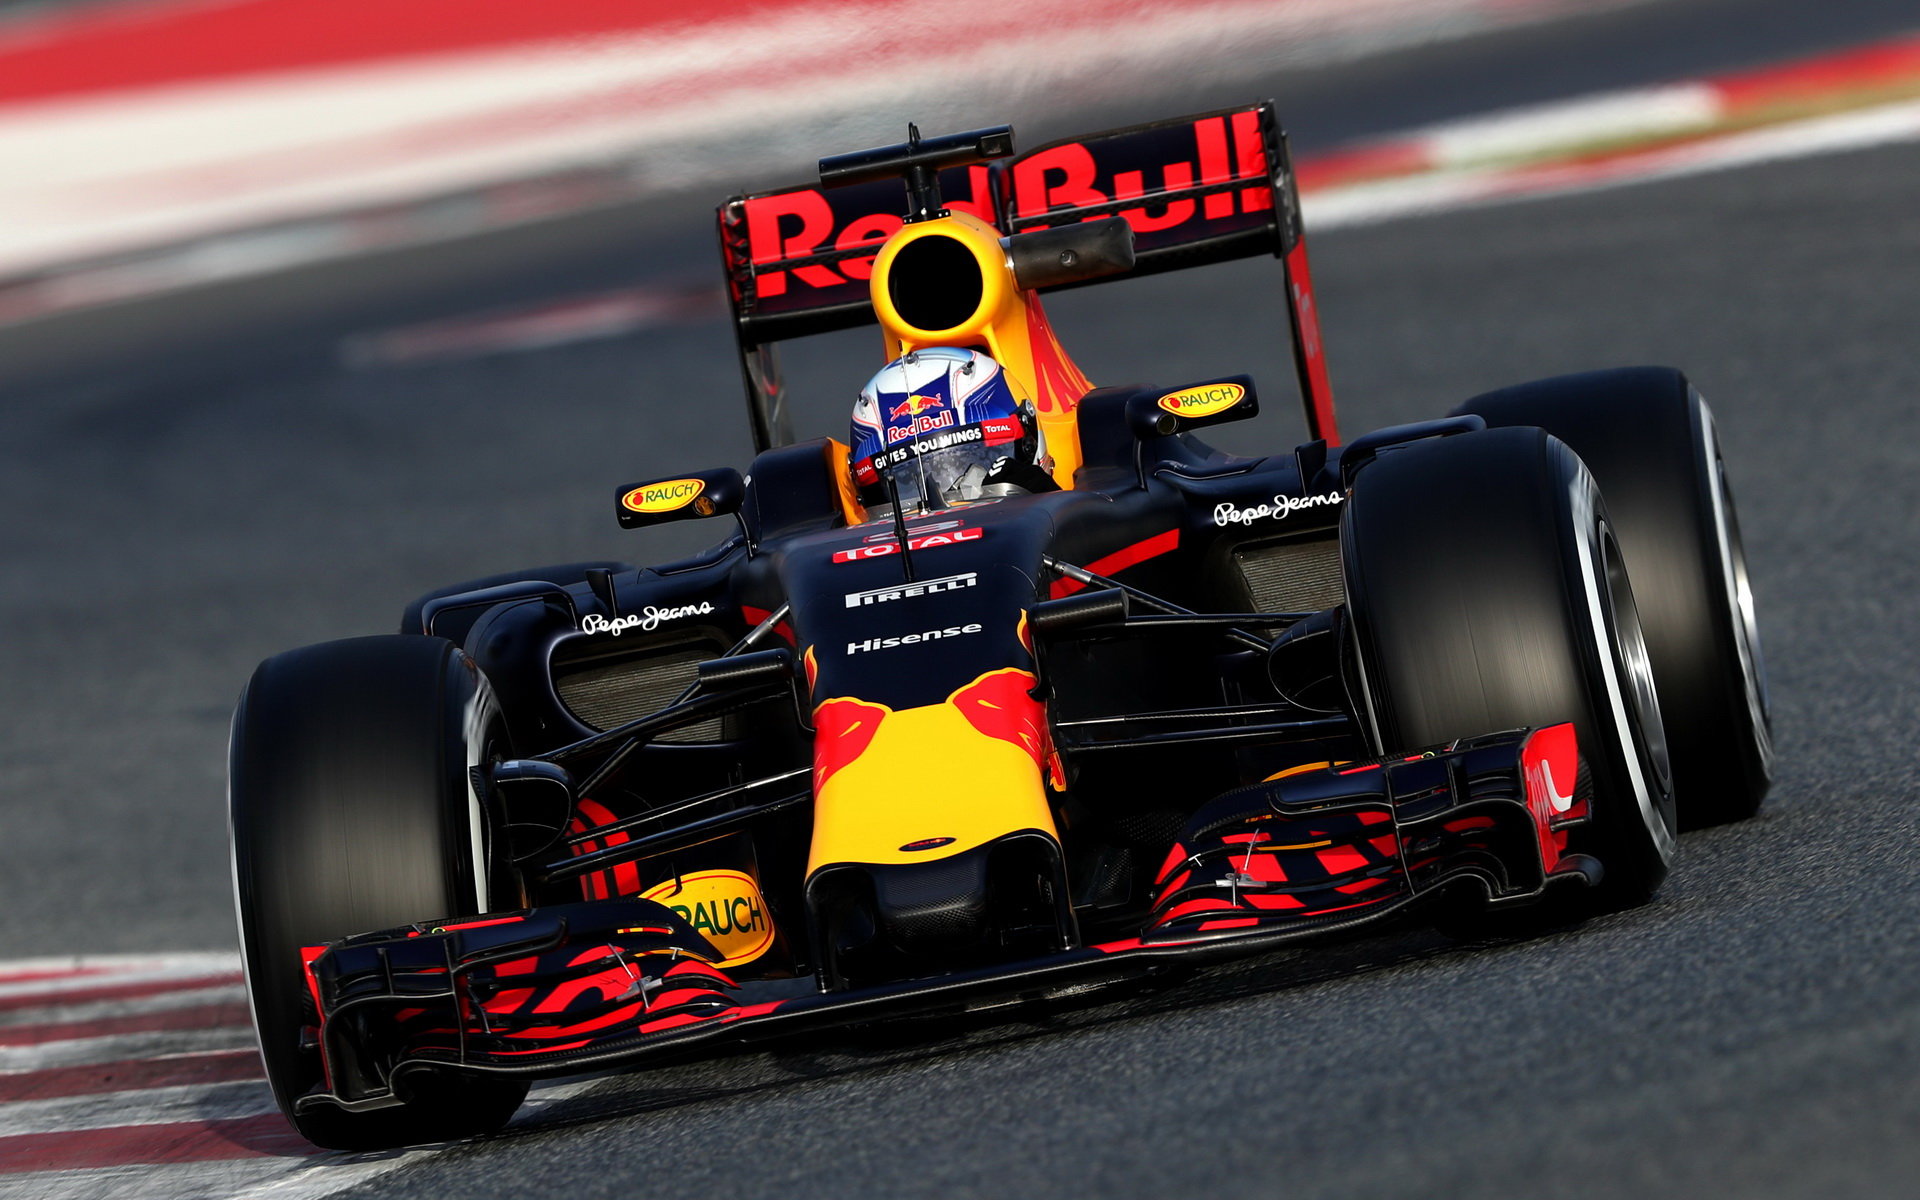 Daniel Ricciardo s vozem Red Bull RB12 - Renault